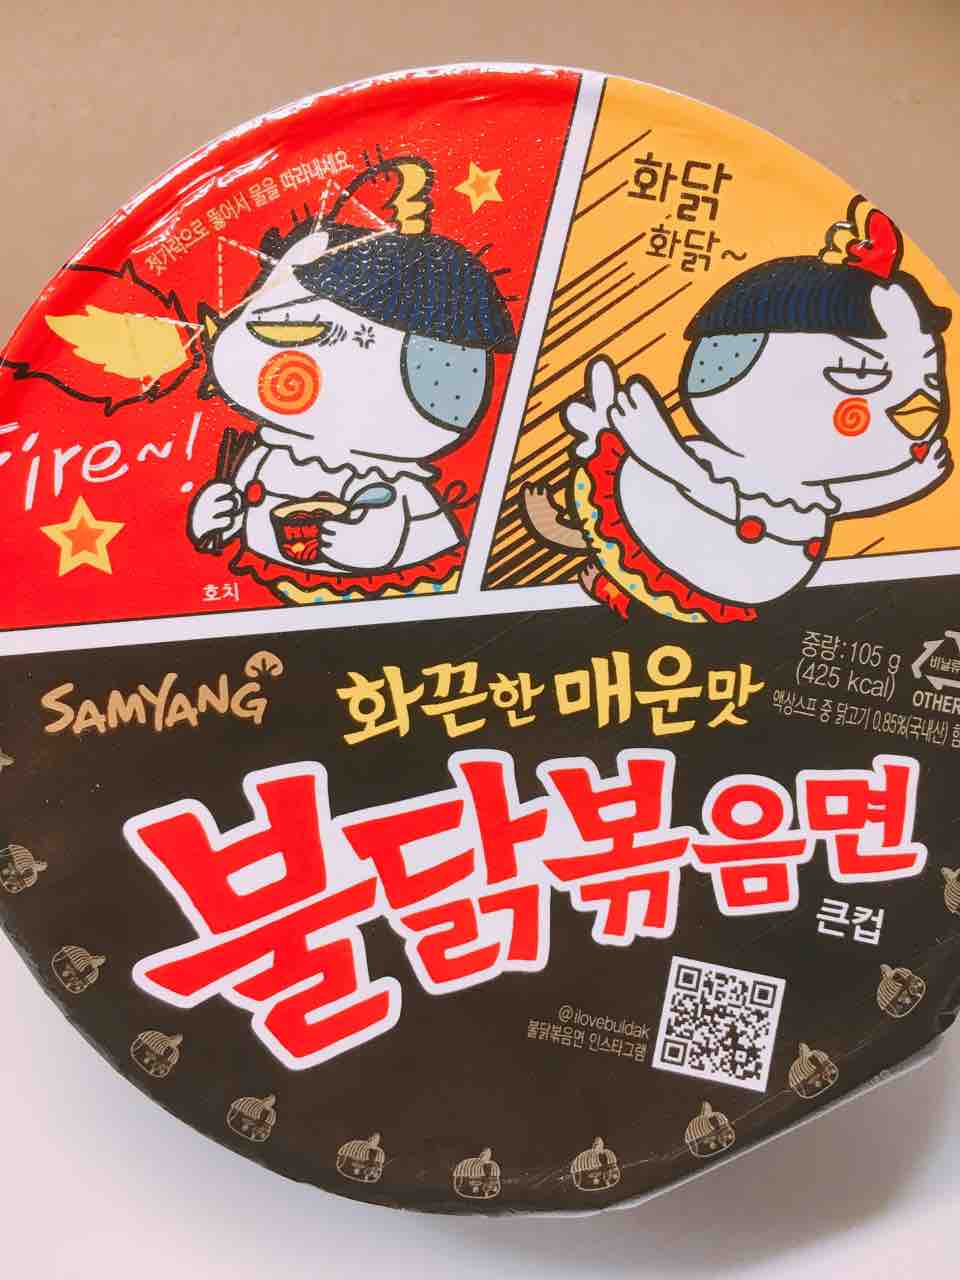 韓国で噂の激辛カップ麺を喰らう プルダック炒め麺 中野祐治のレコ麺 メン ドdiary